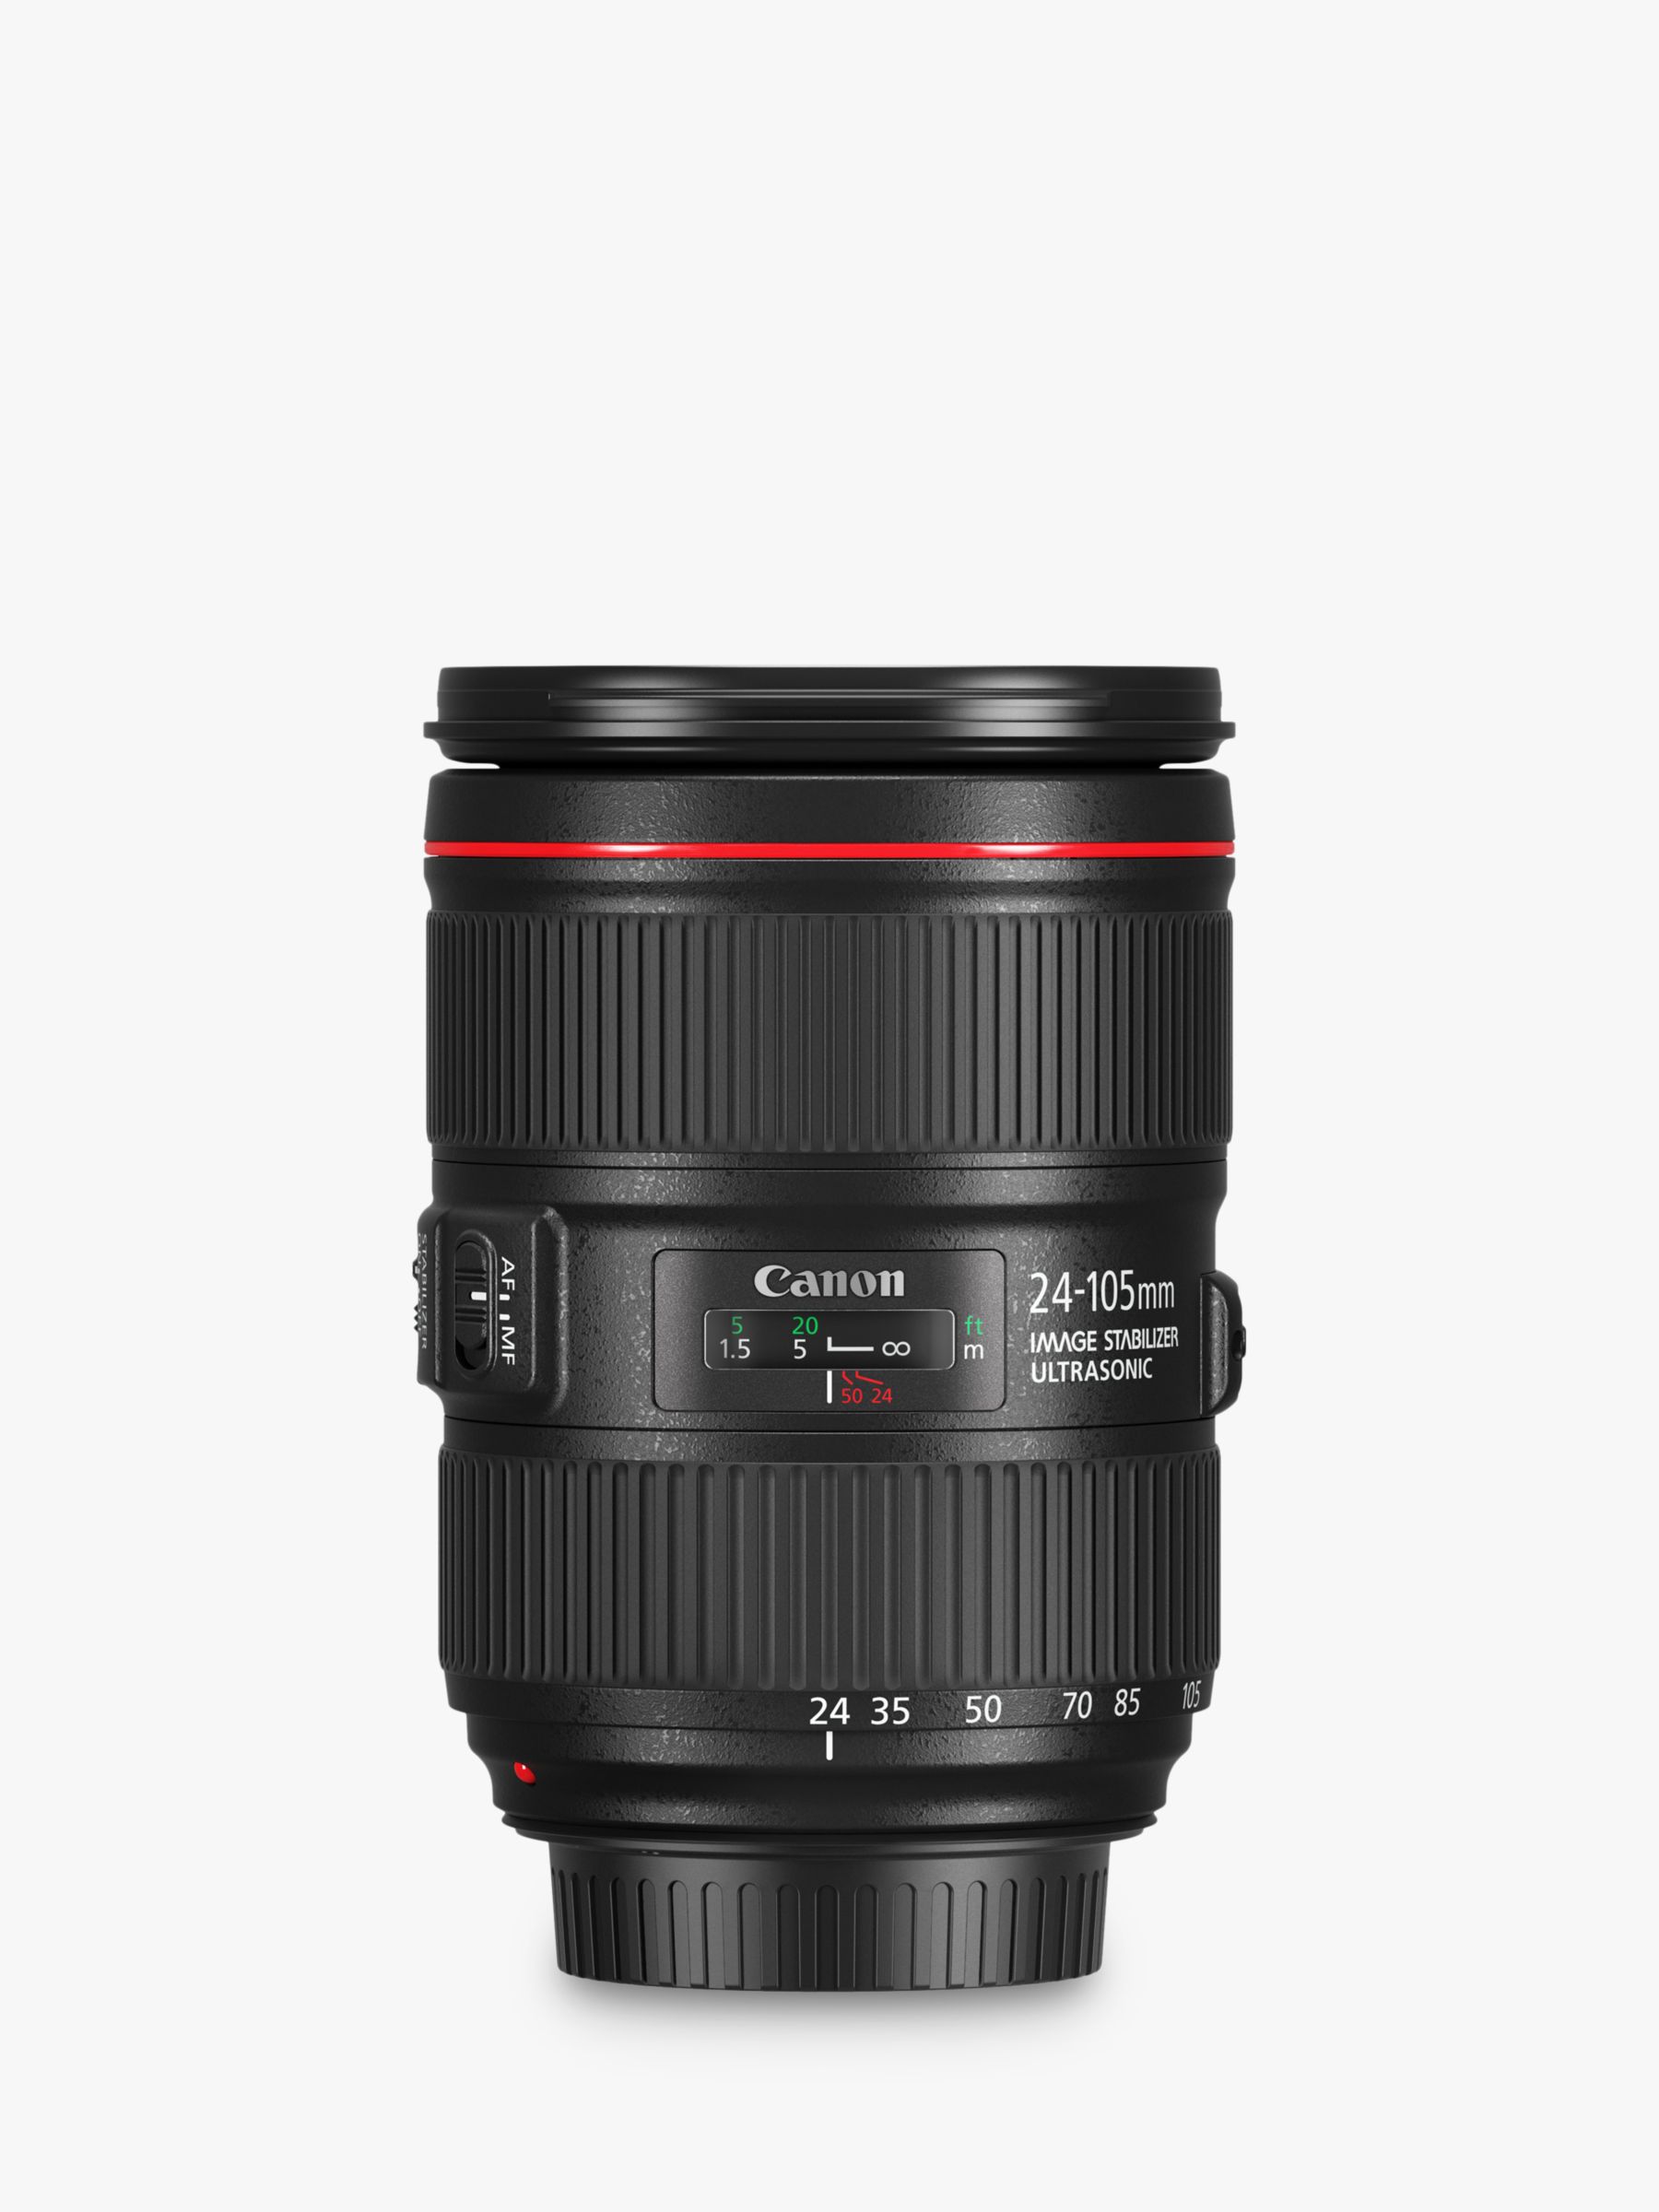 Image of Canon EF 24105mm f4L IS II USM Standard Zoom Lens